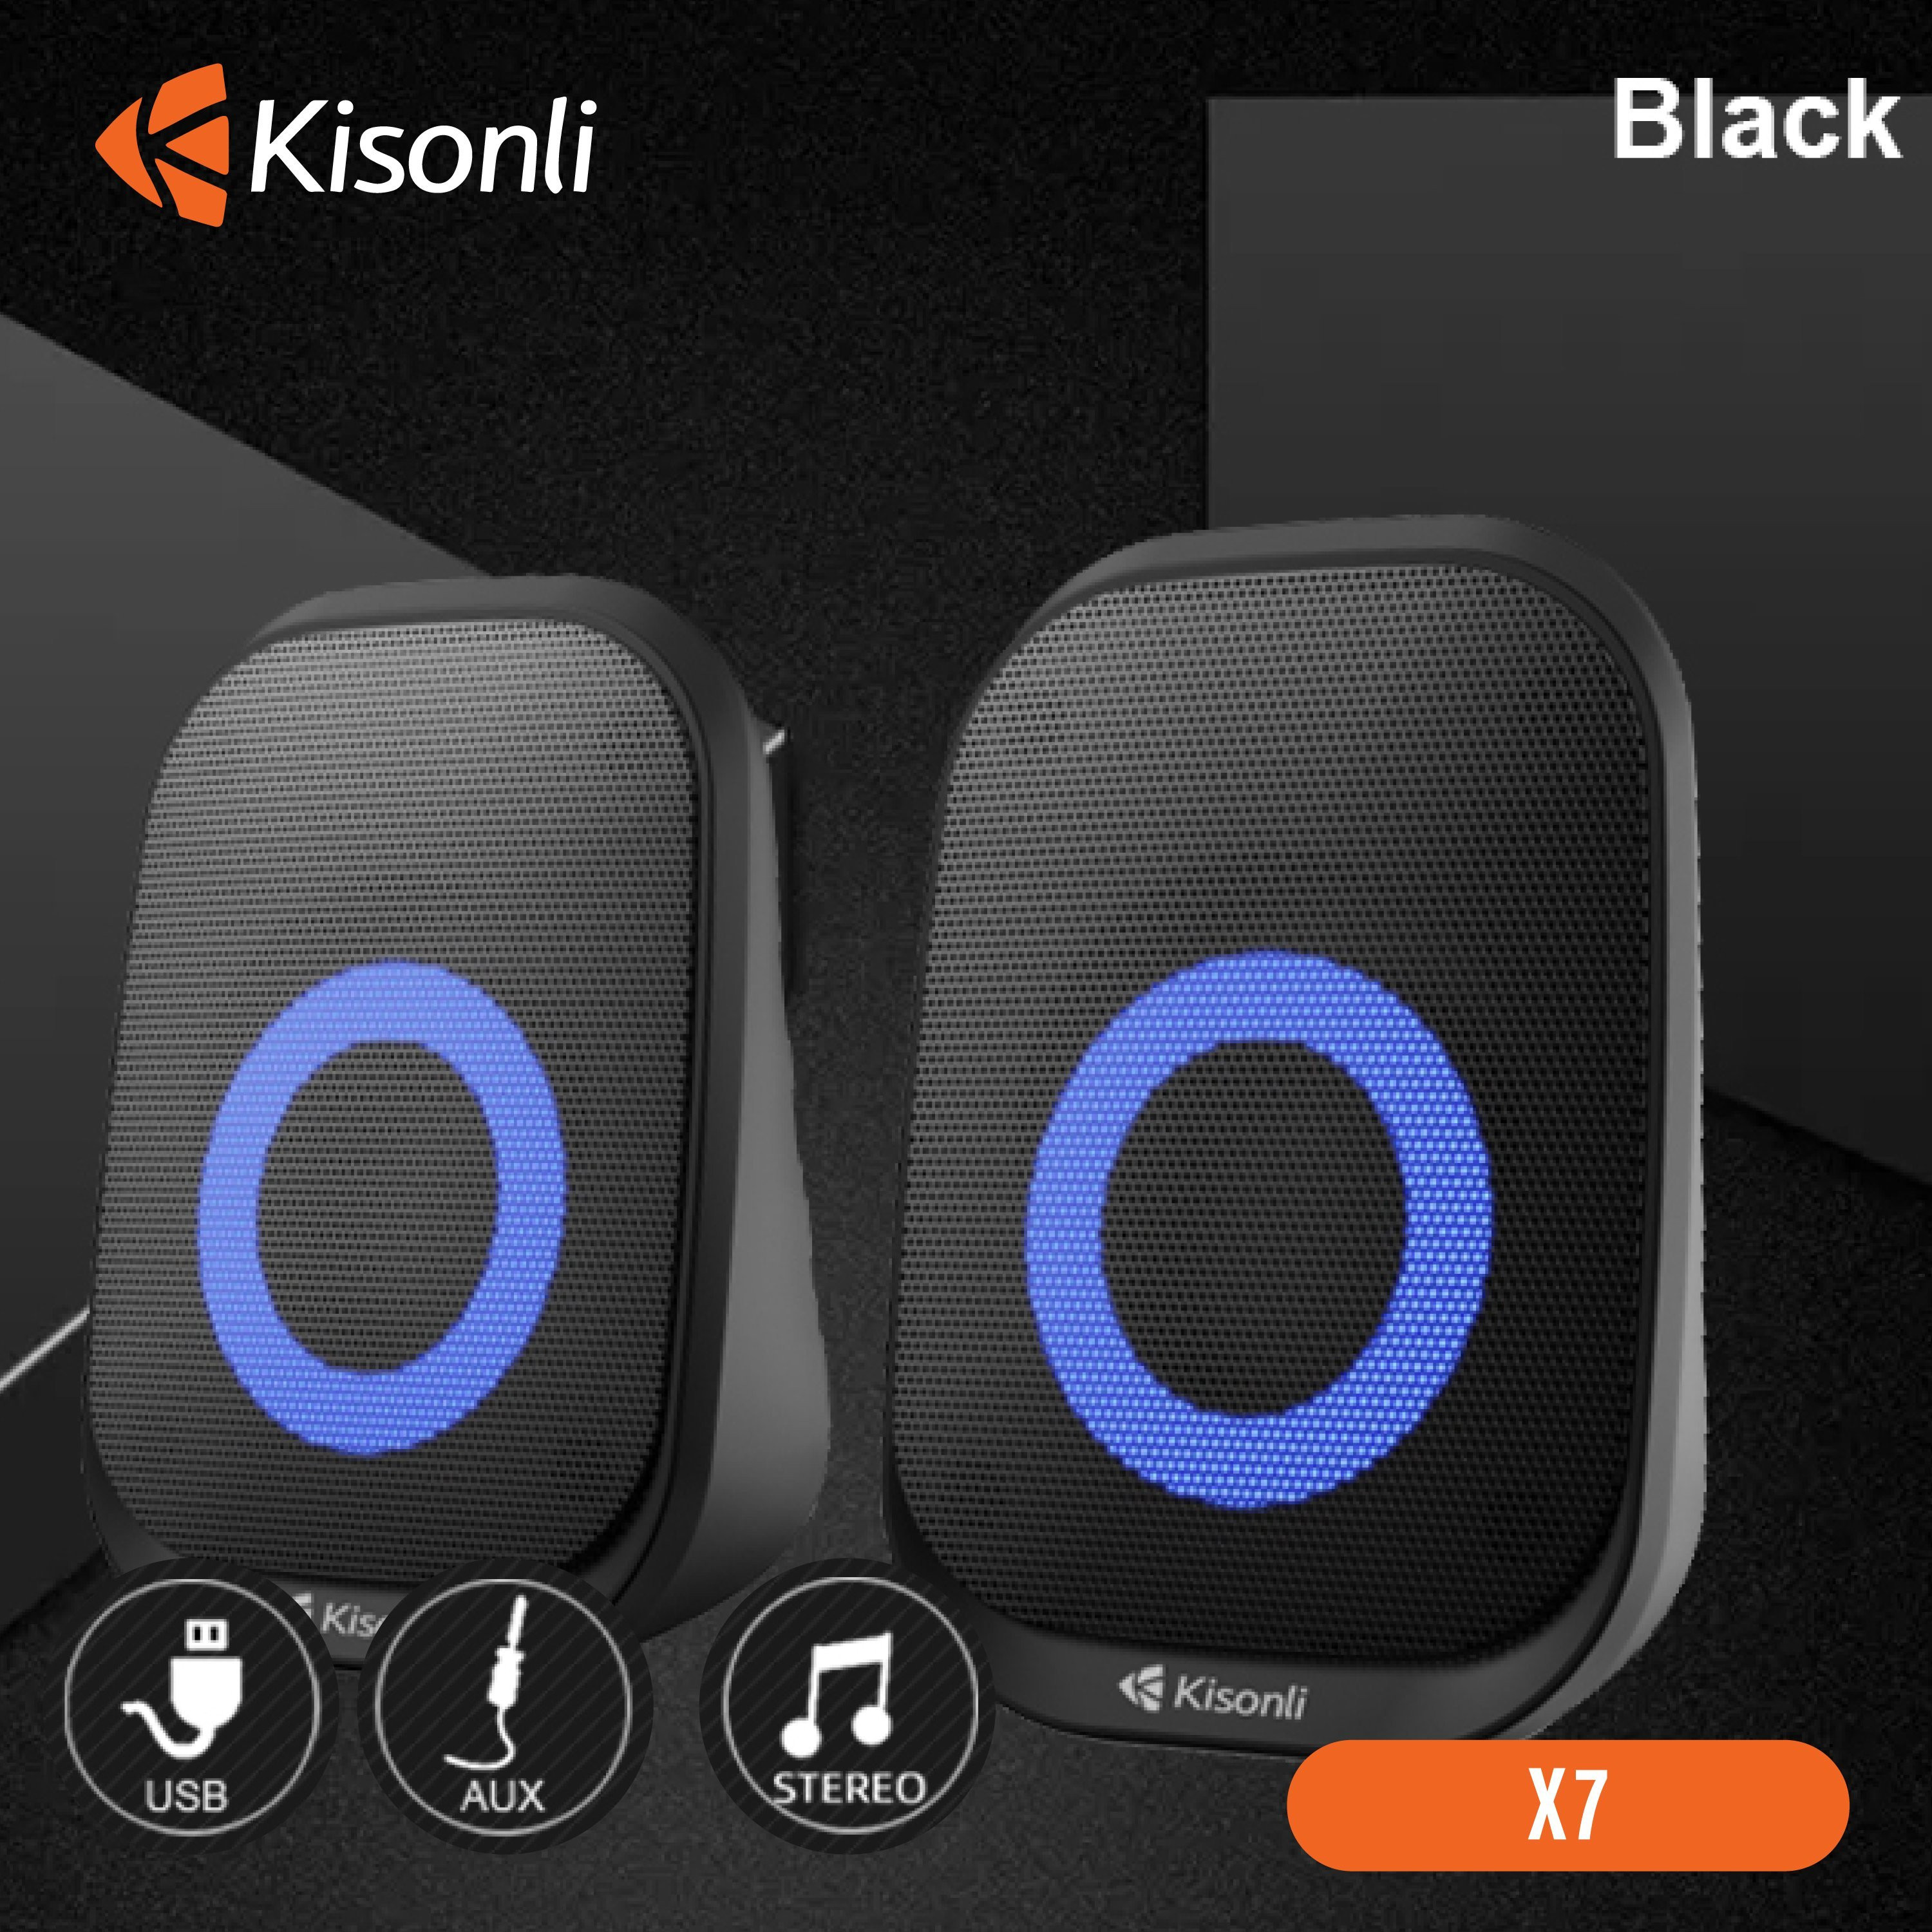 Loa 2.0 Kisonli X7 Black LED - Hàng chính hãng